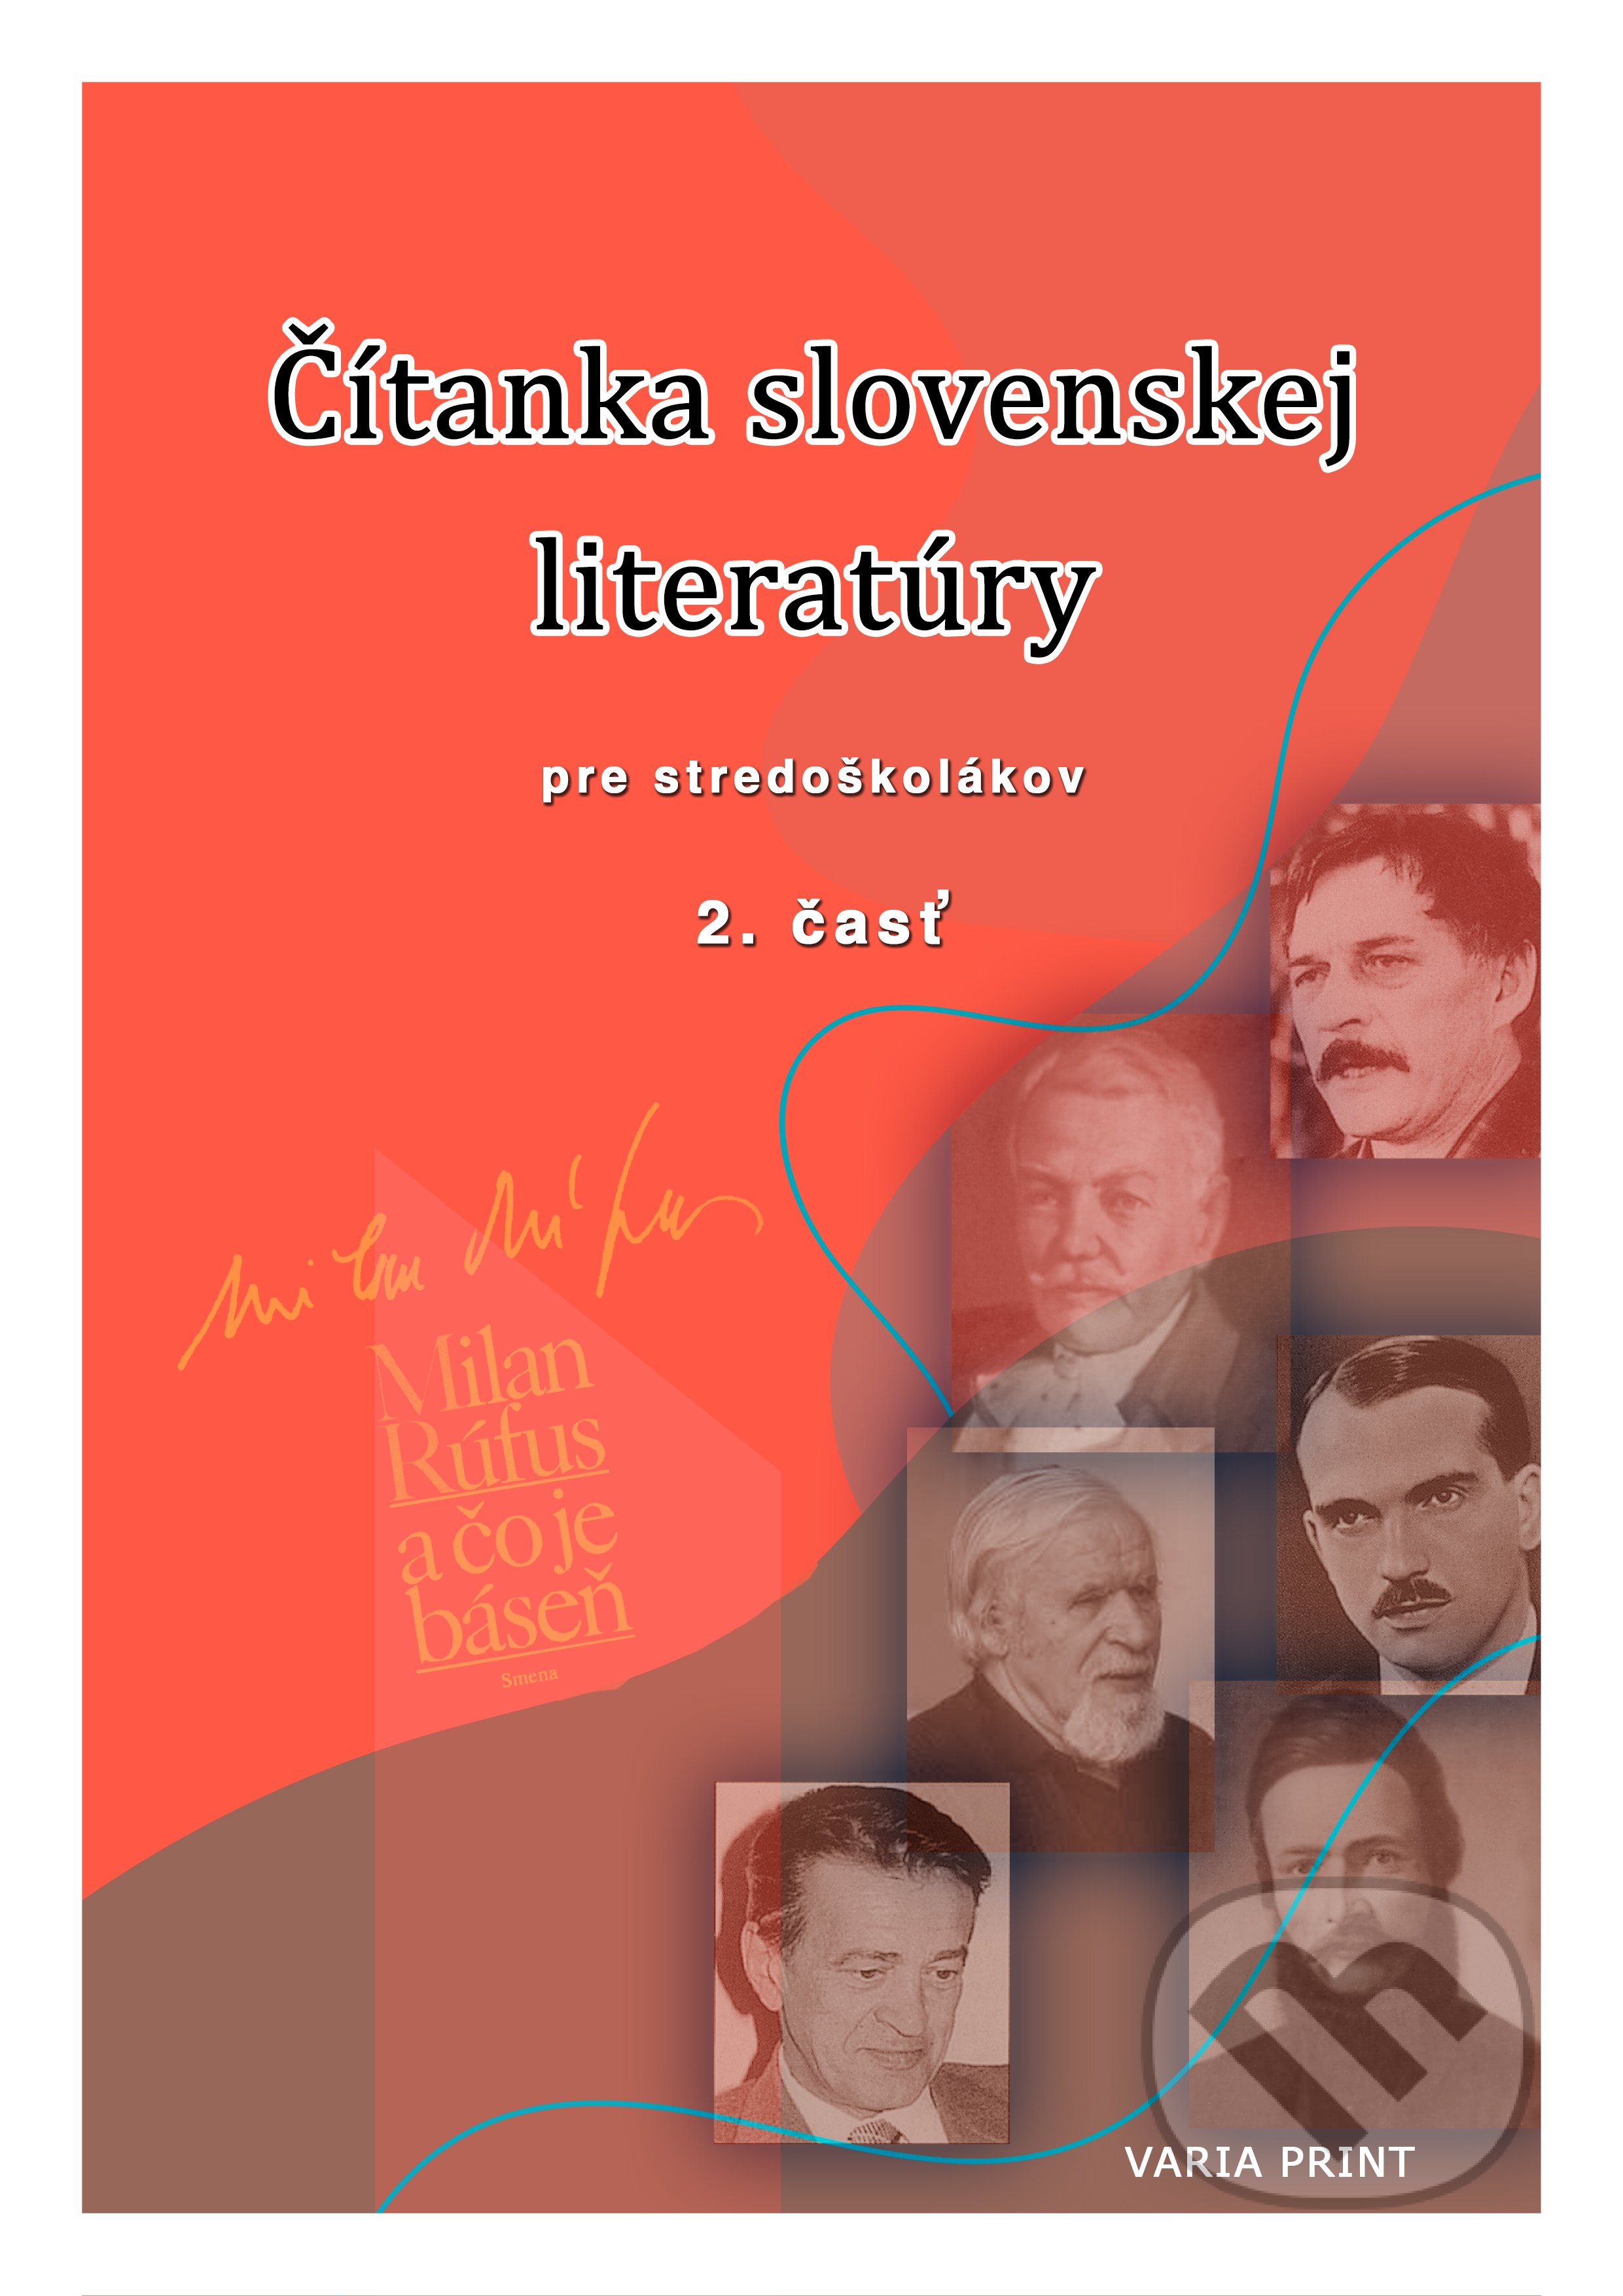 Čítanka slovenskej literatúry pre stredoškolákov, 2. časť, VARIA PRINT